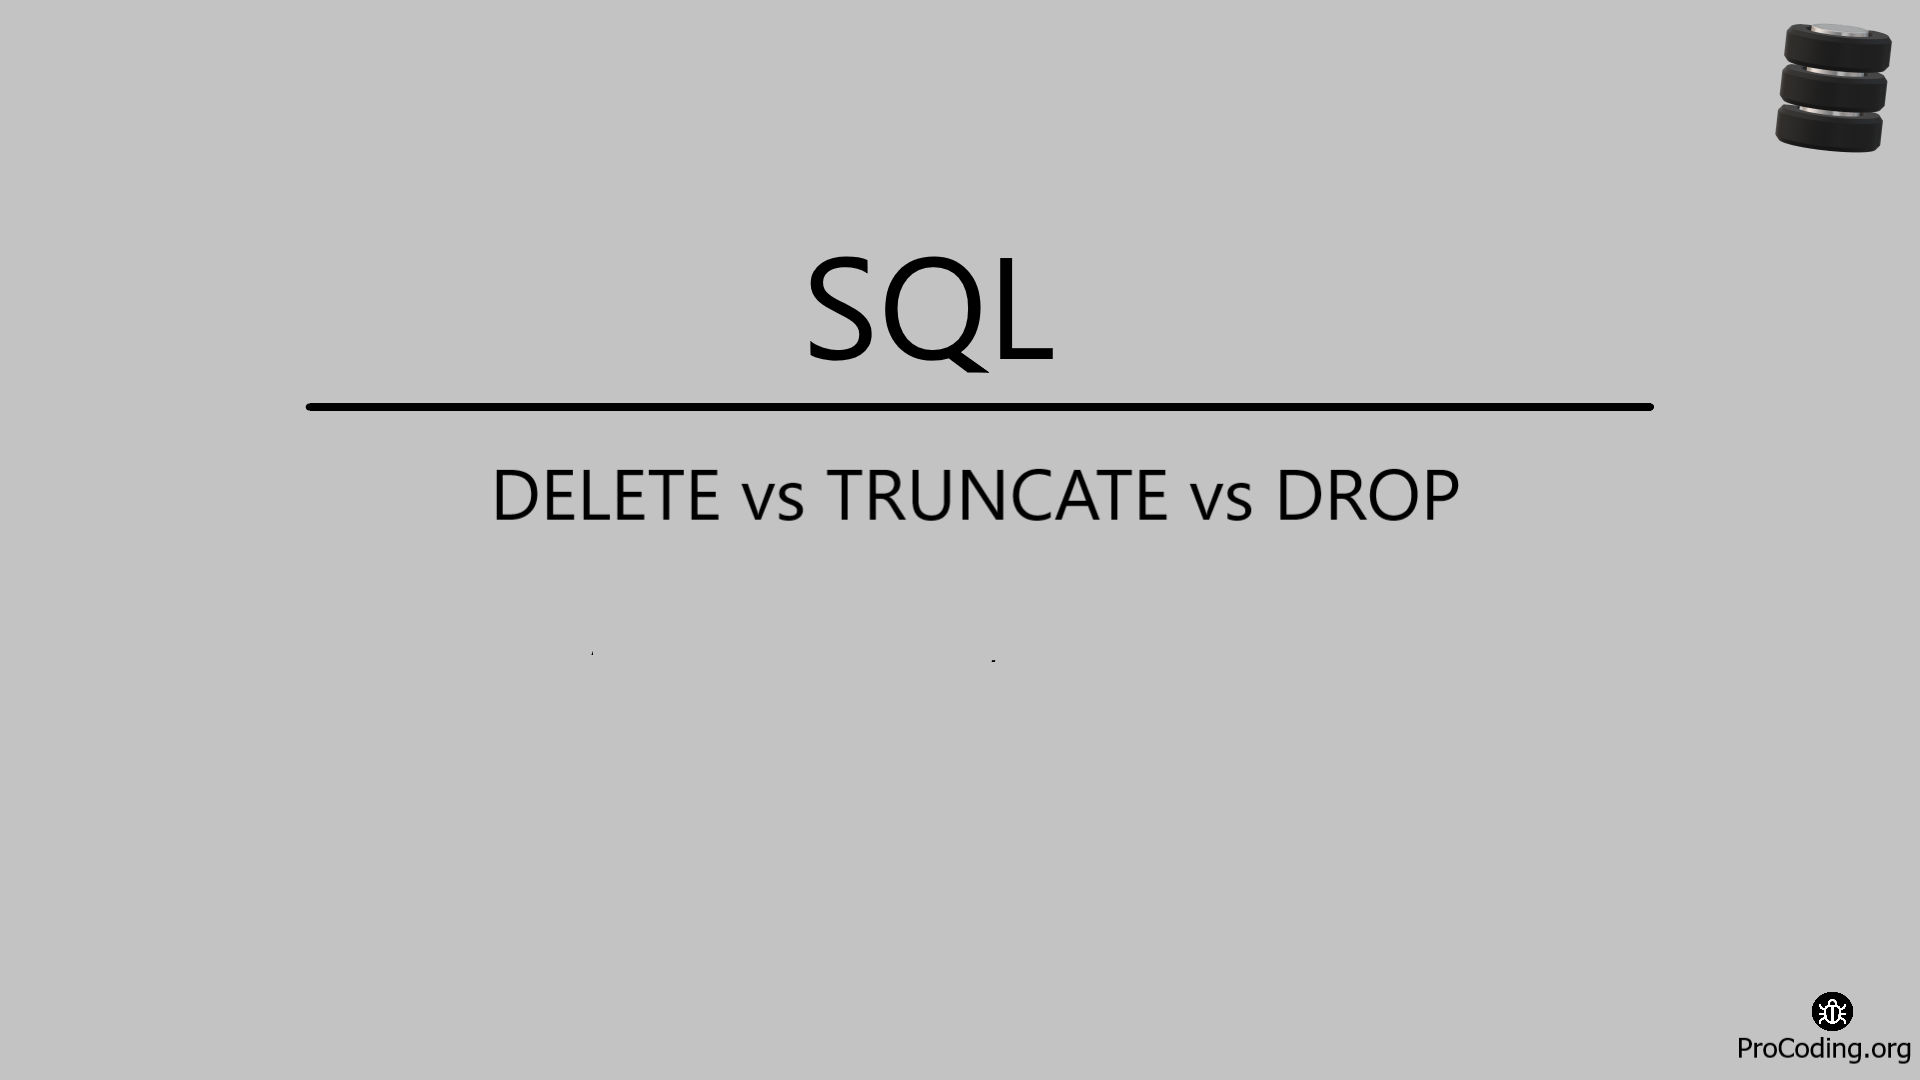 DELETE vs TRUNCATE vs DROP in SQL